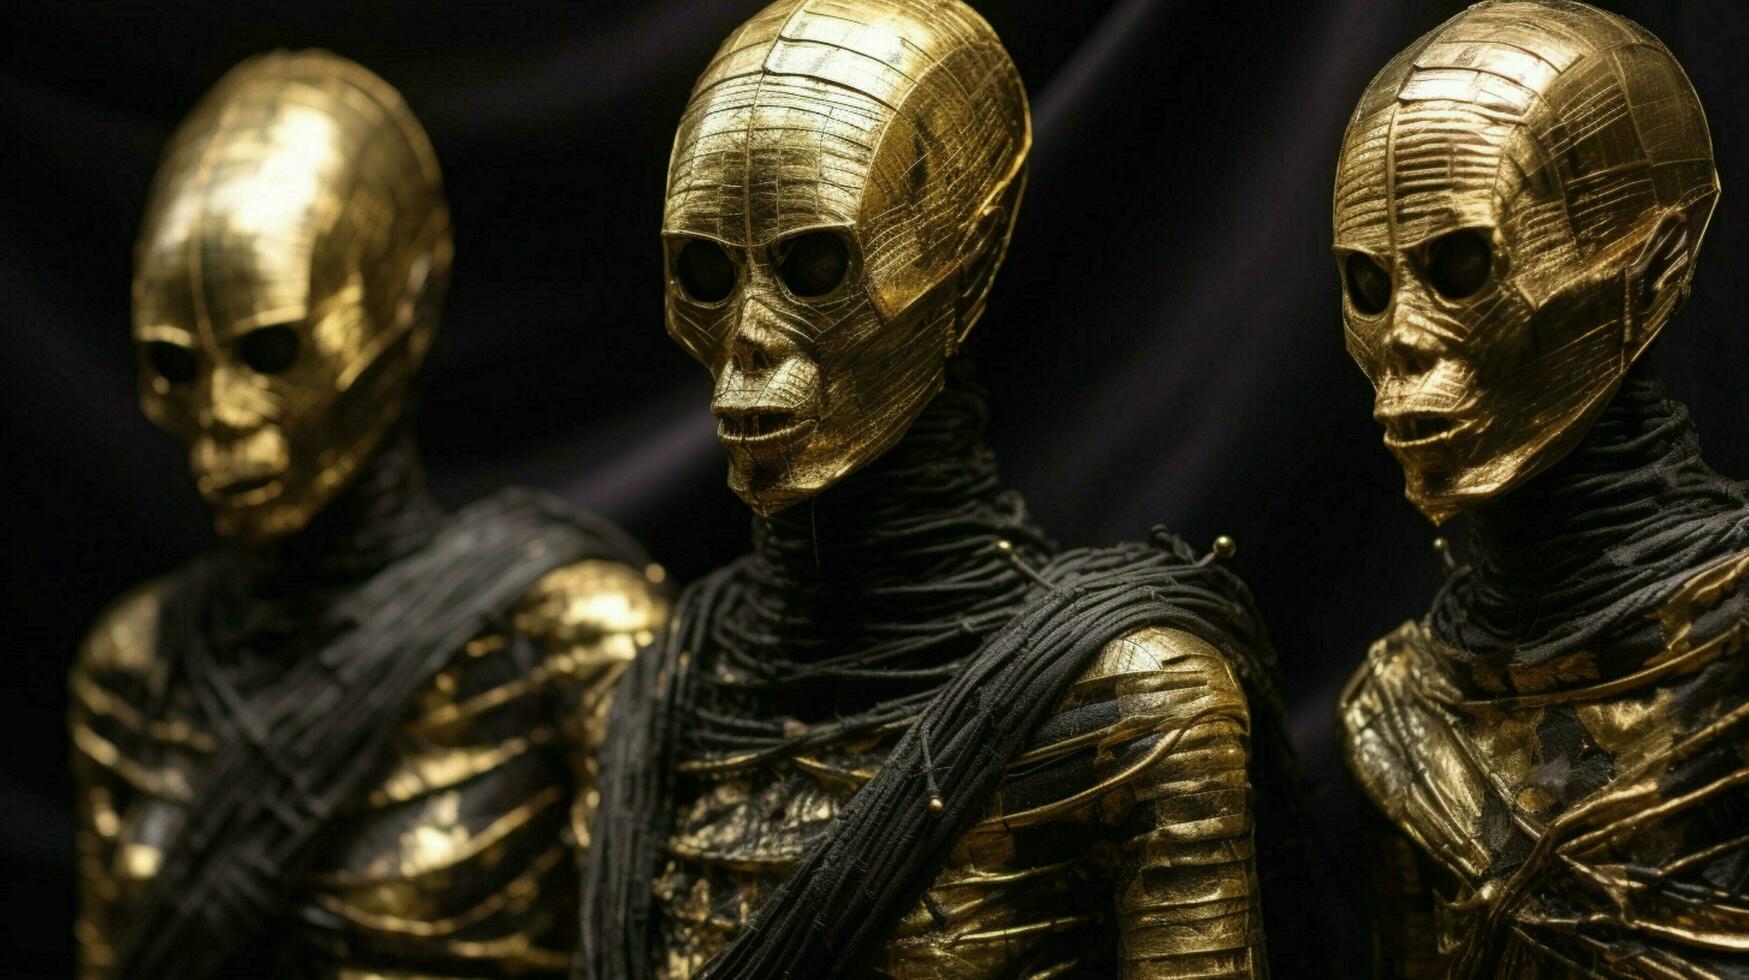 d'oro mummia nel nero con d'oro costumi foto